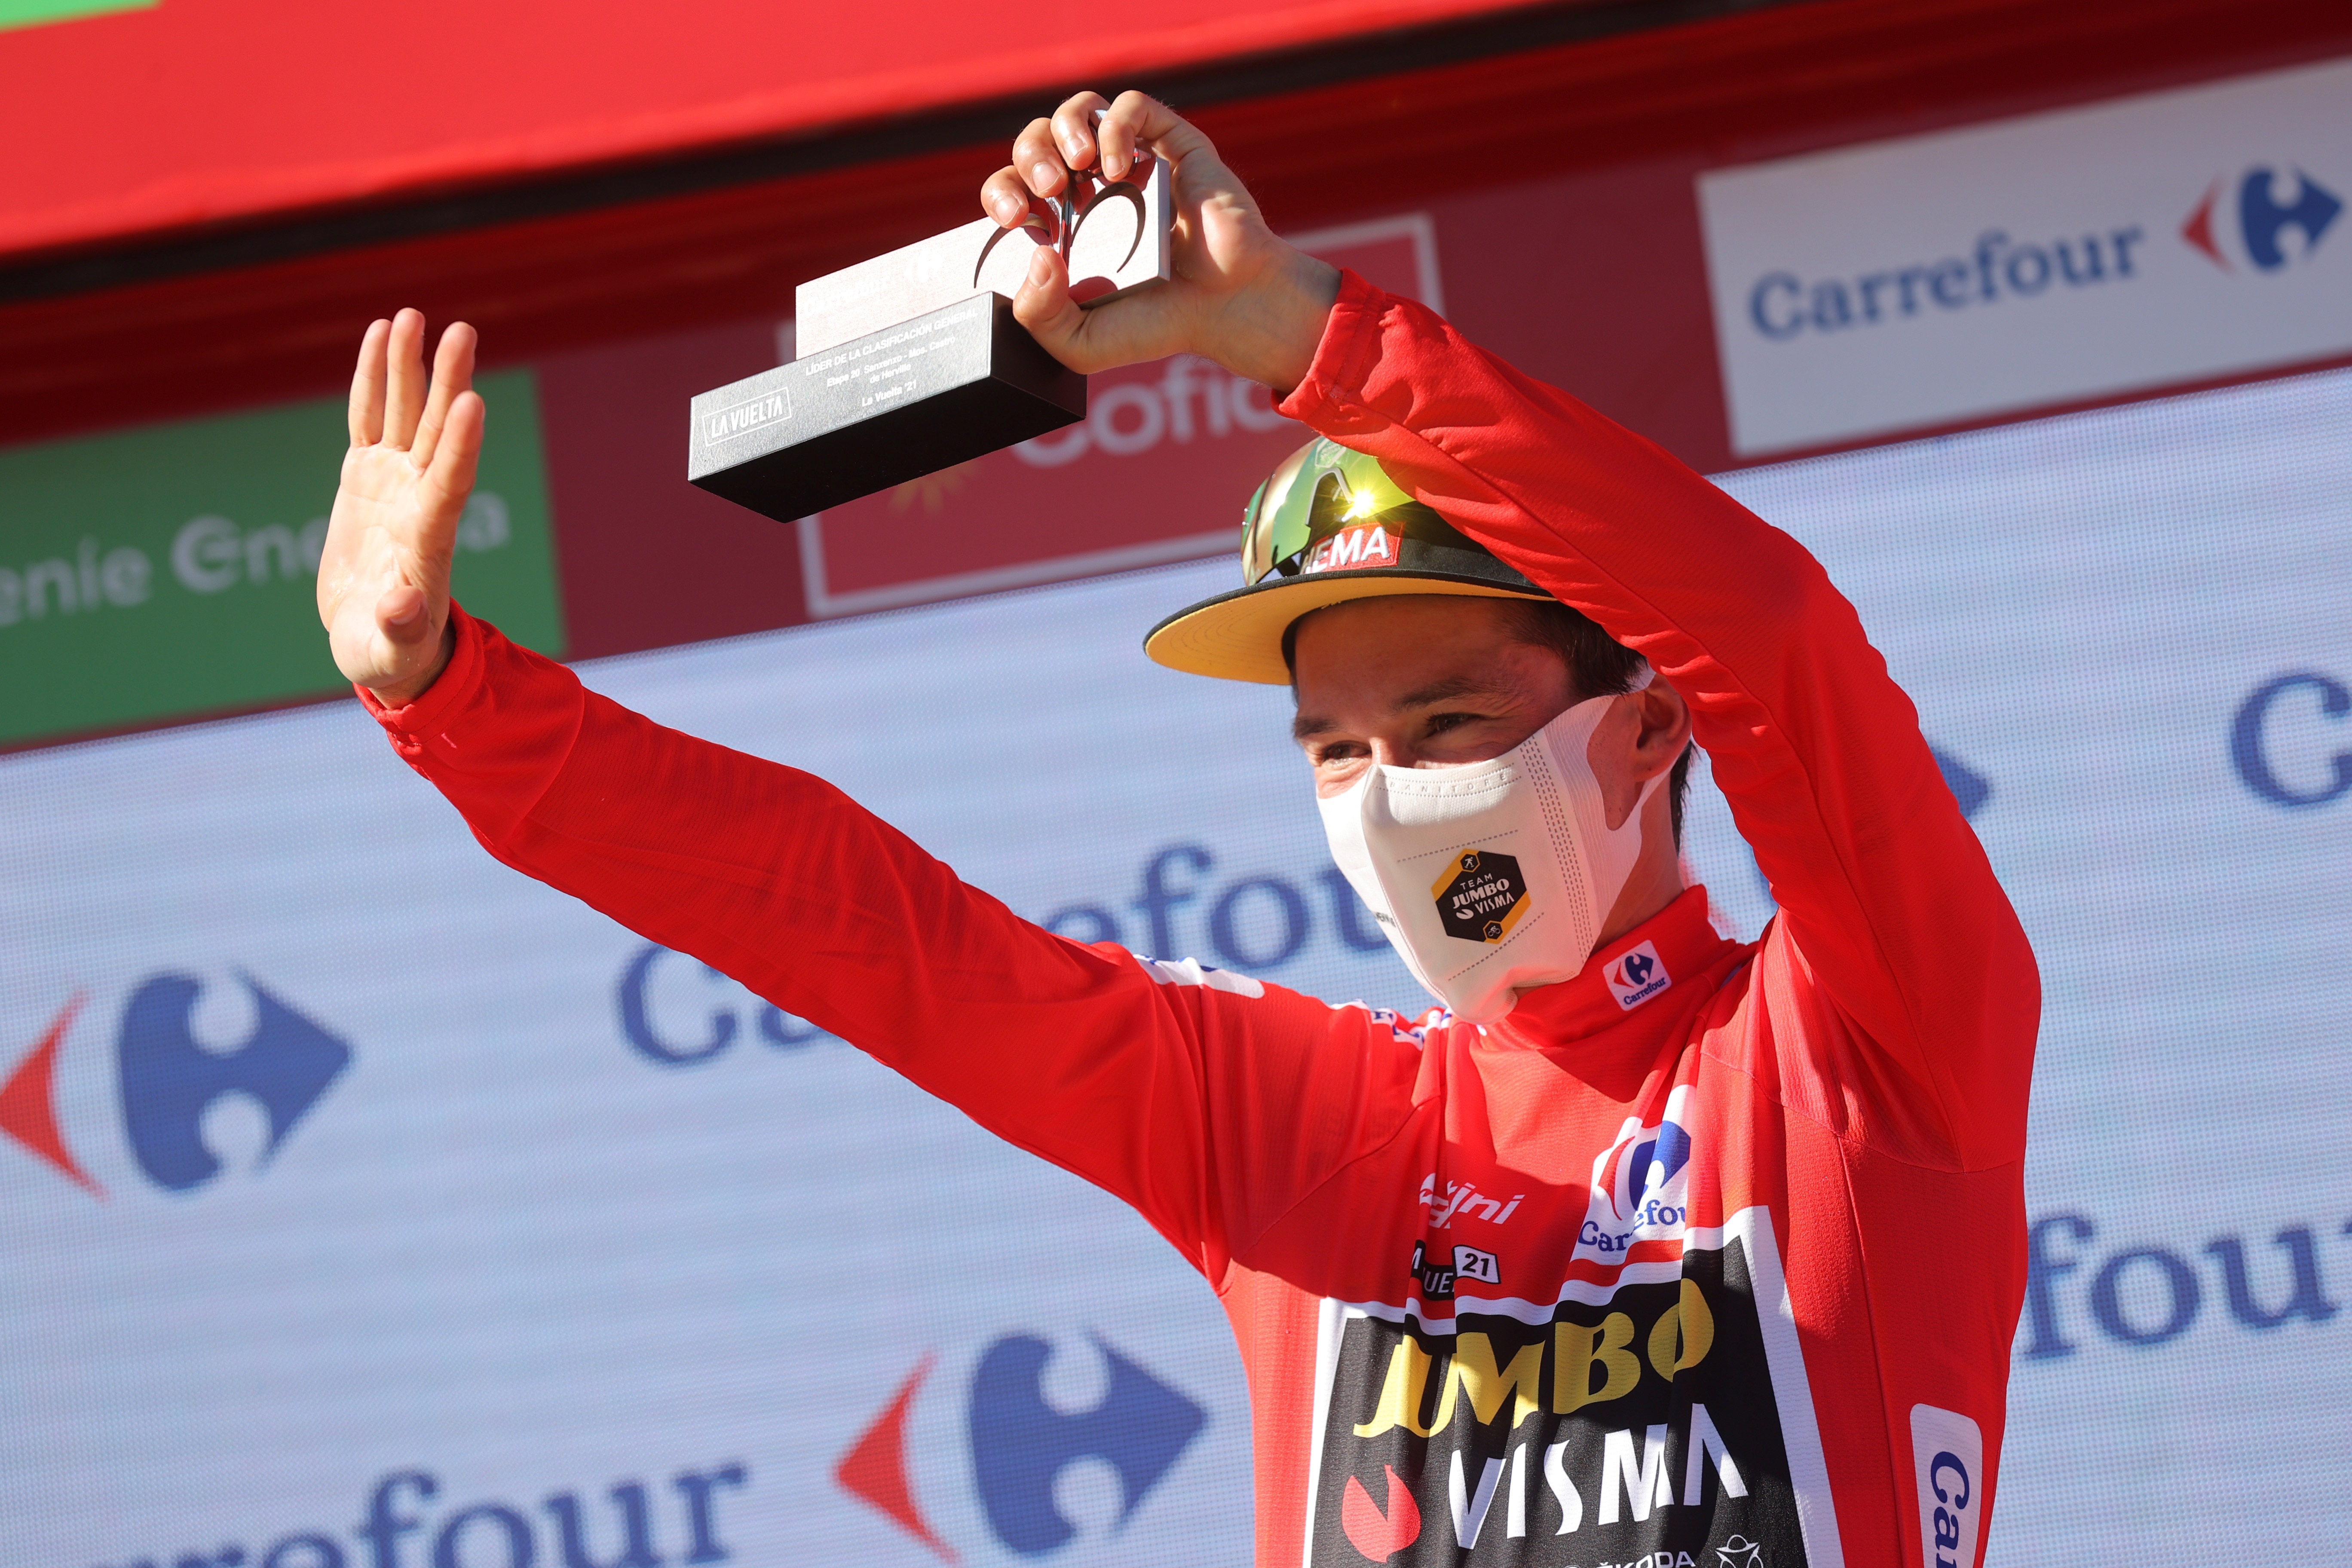 El ciclista esloveno, Primoz Roglic, ganó su tercera edición de la Vuelta a España. Foto: EFE/Manuel Bruque
